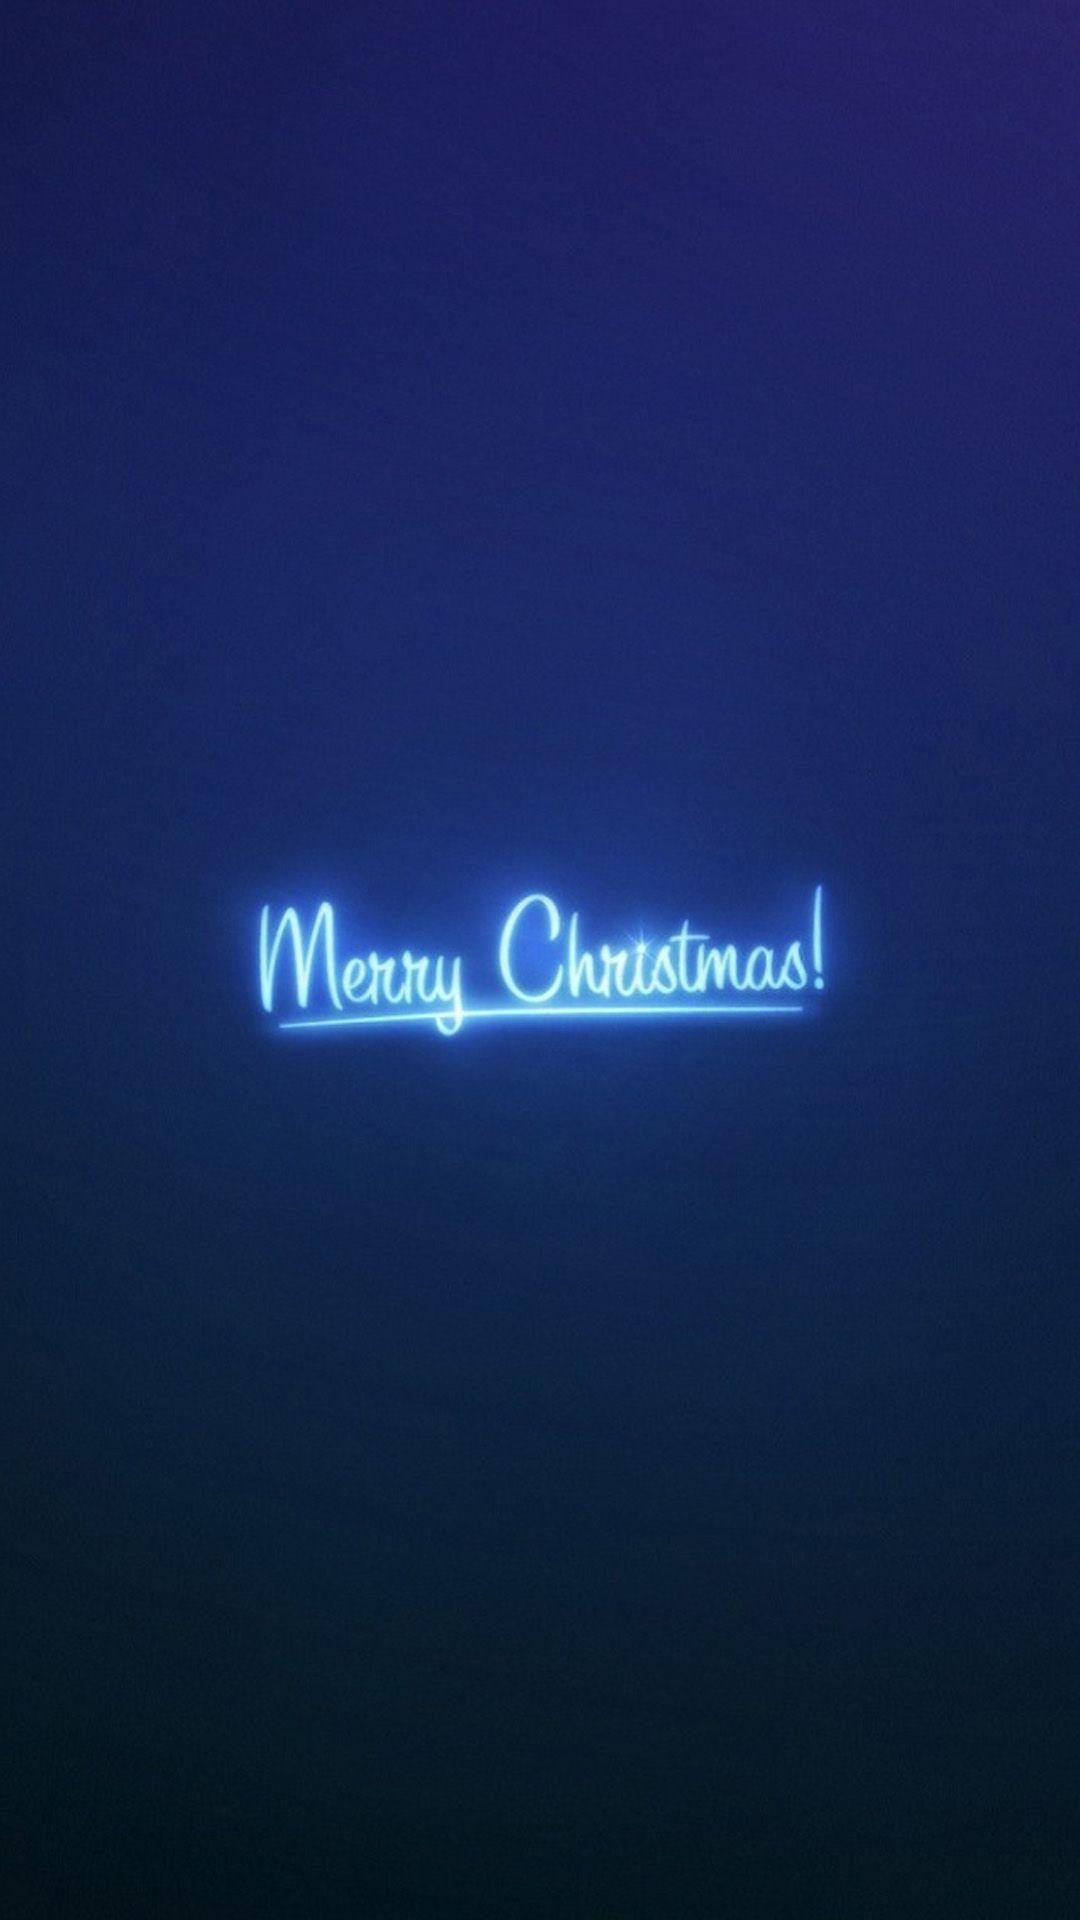 Tải xuống miễn phí Hình nền Android 1080x1920 Merry Christmas Neon Blue Light